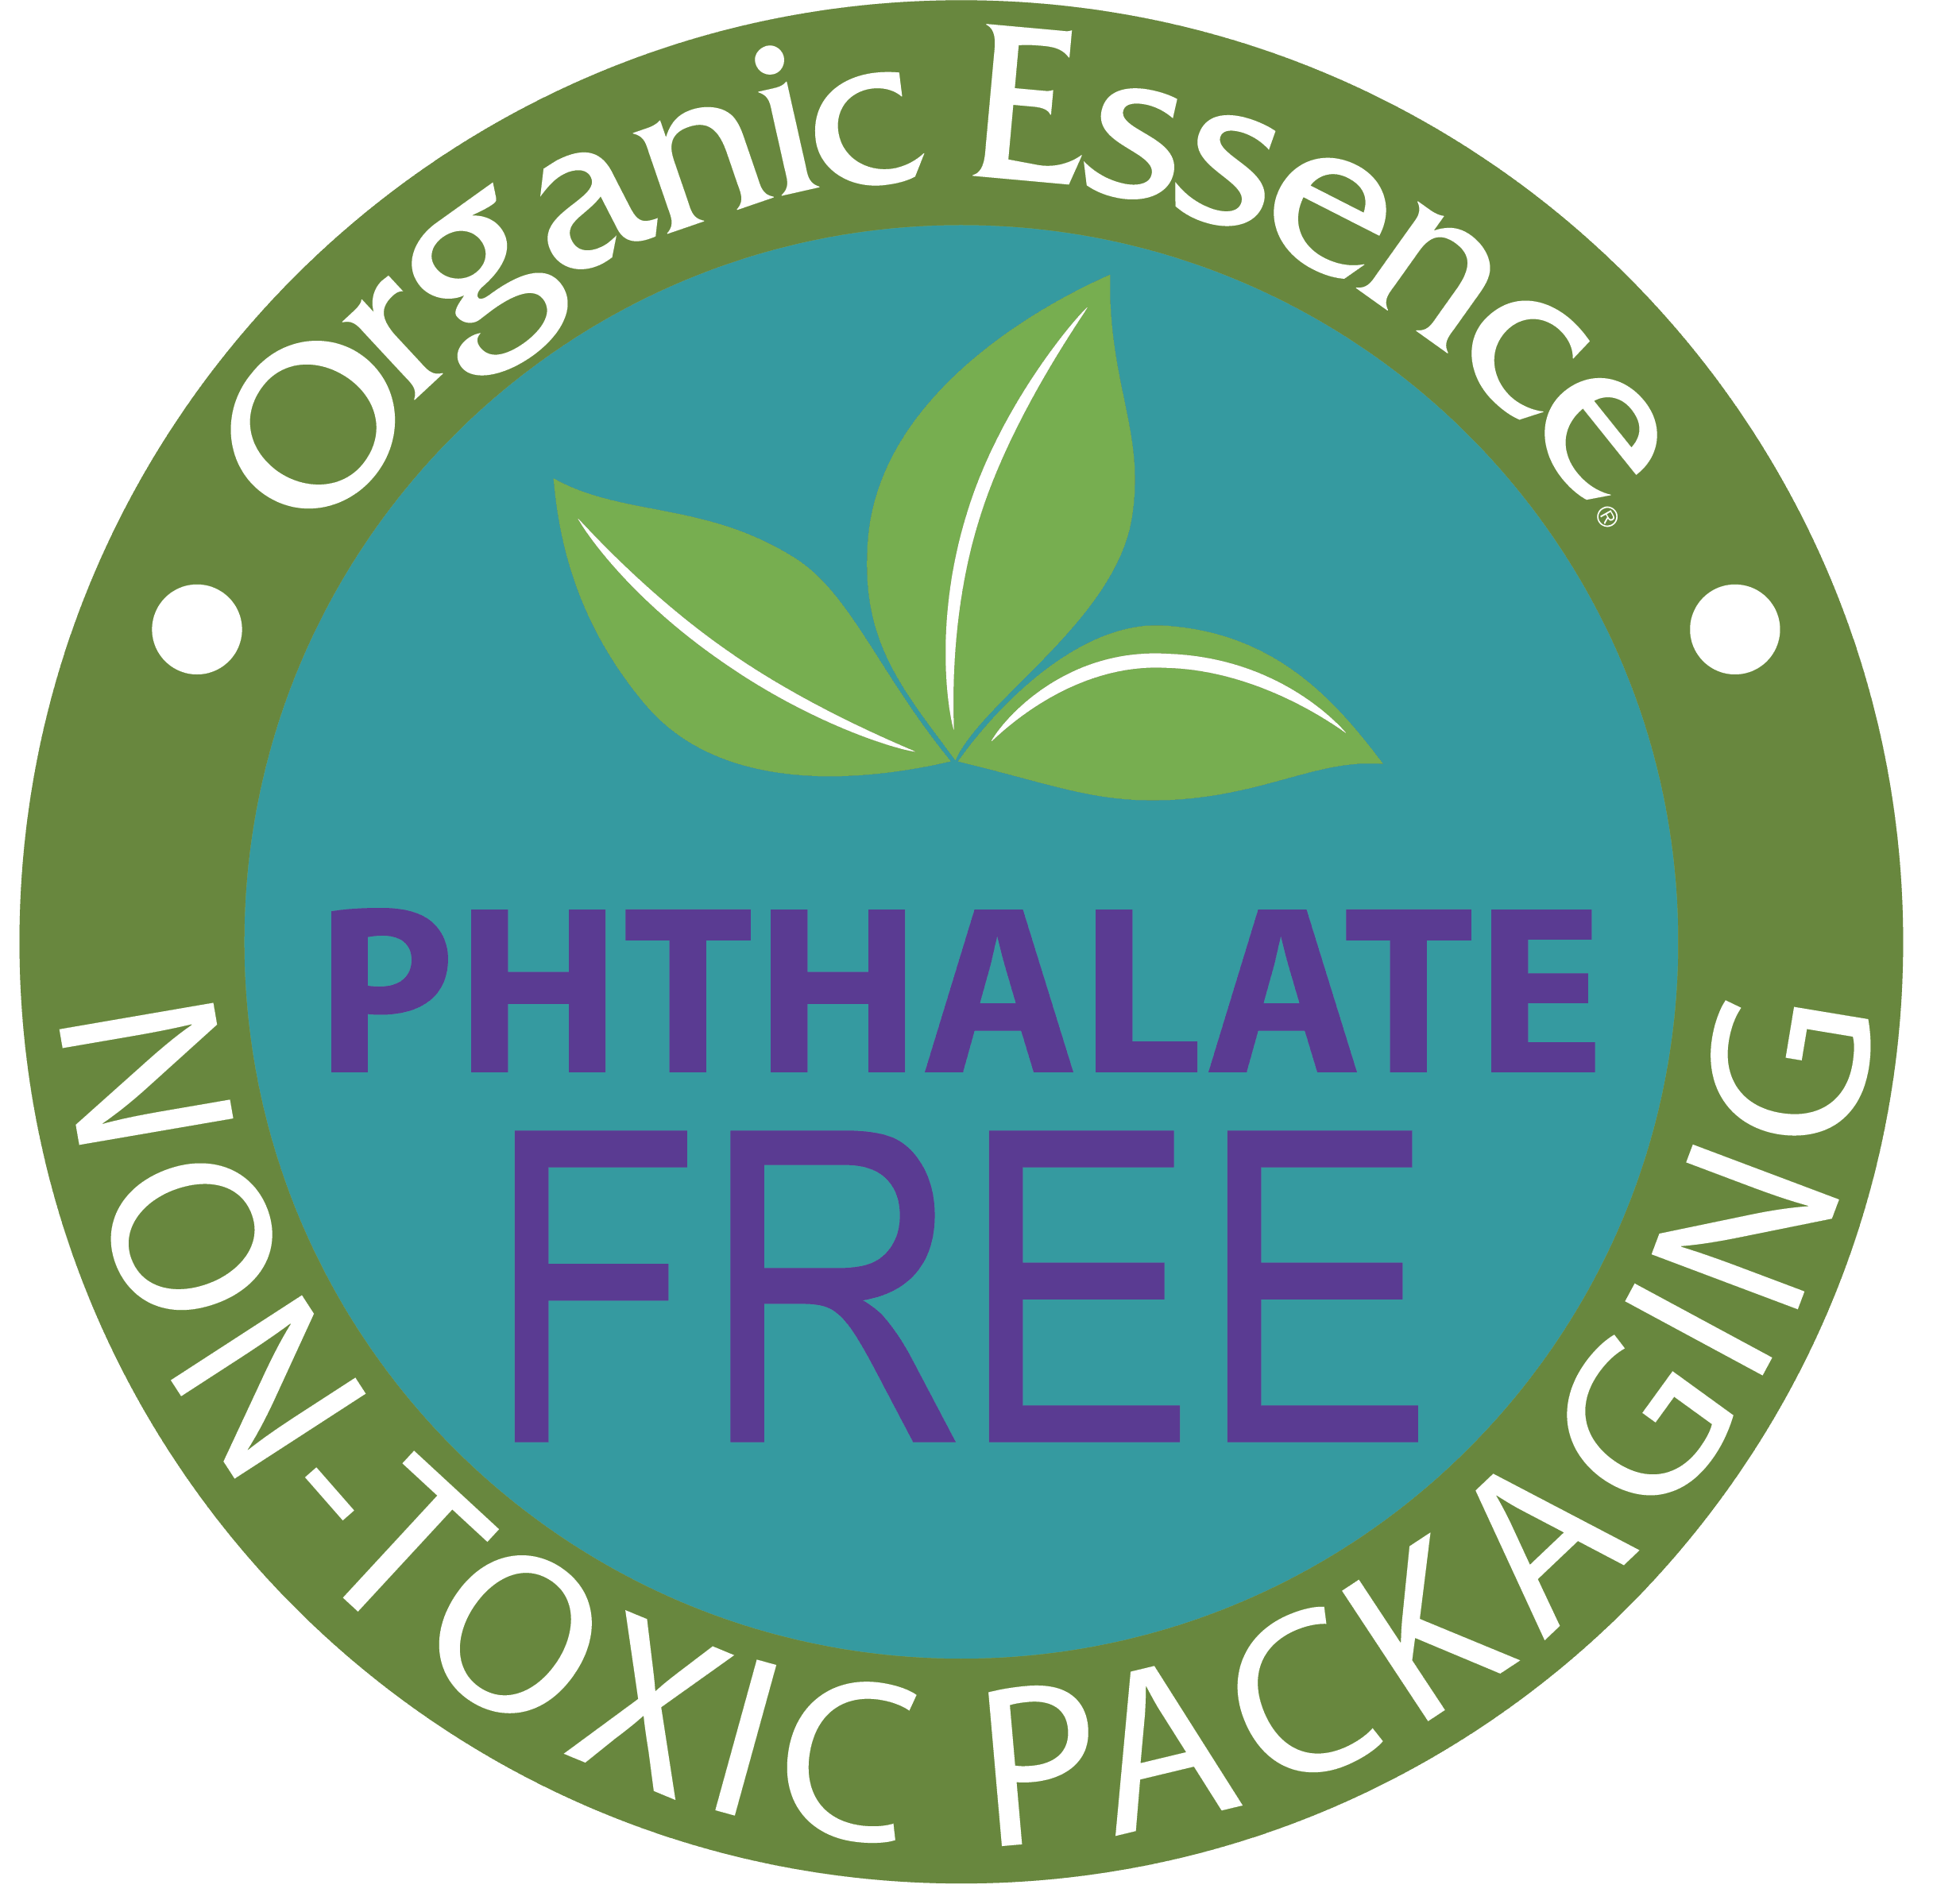 Organic Essence-netoxická BIO tělová kosmetika